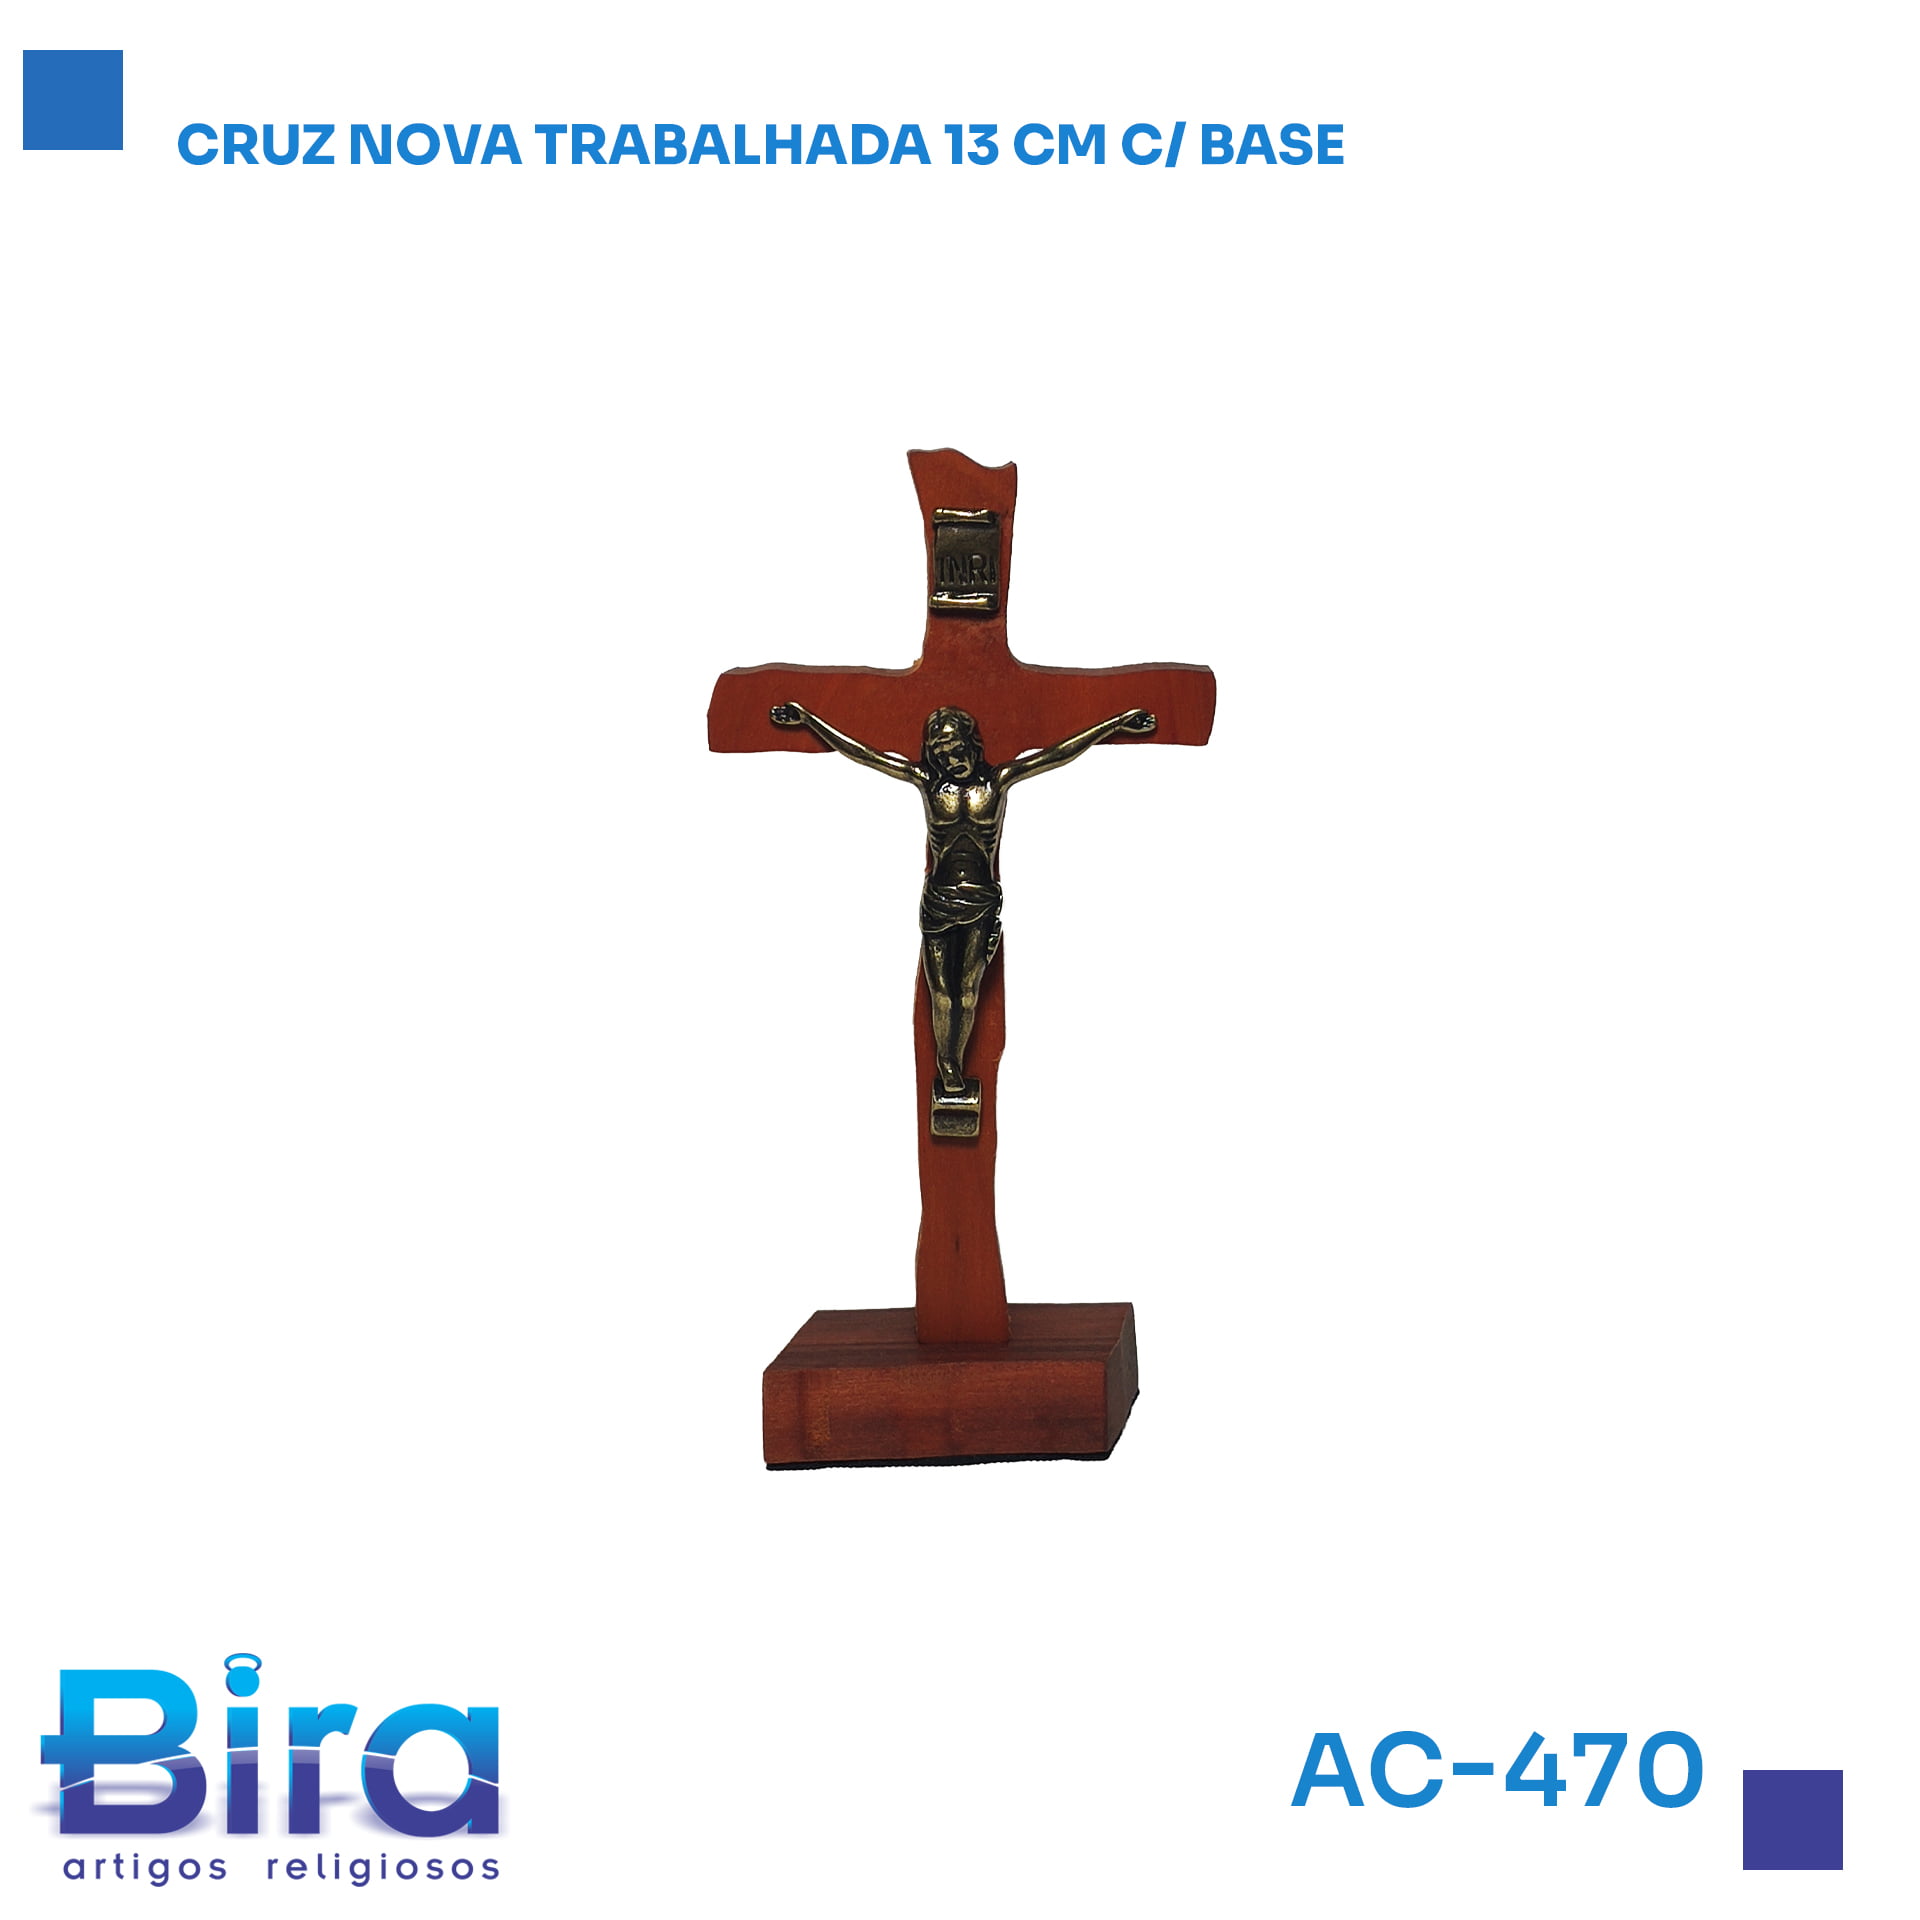 Bira Artigos Religiosos - CRUZ NOVA TRABALHADA 13CM COM BASE  Cód.: AC-470